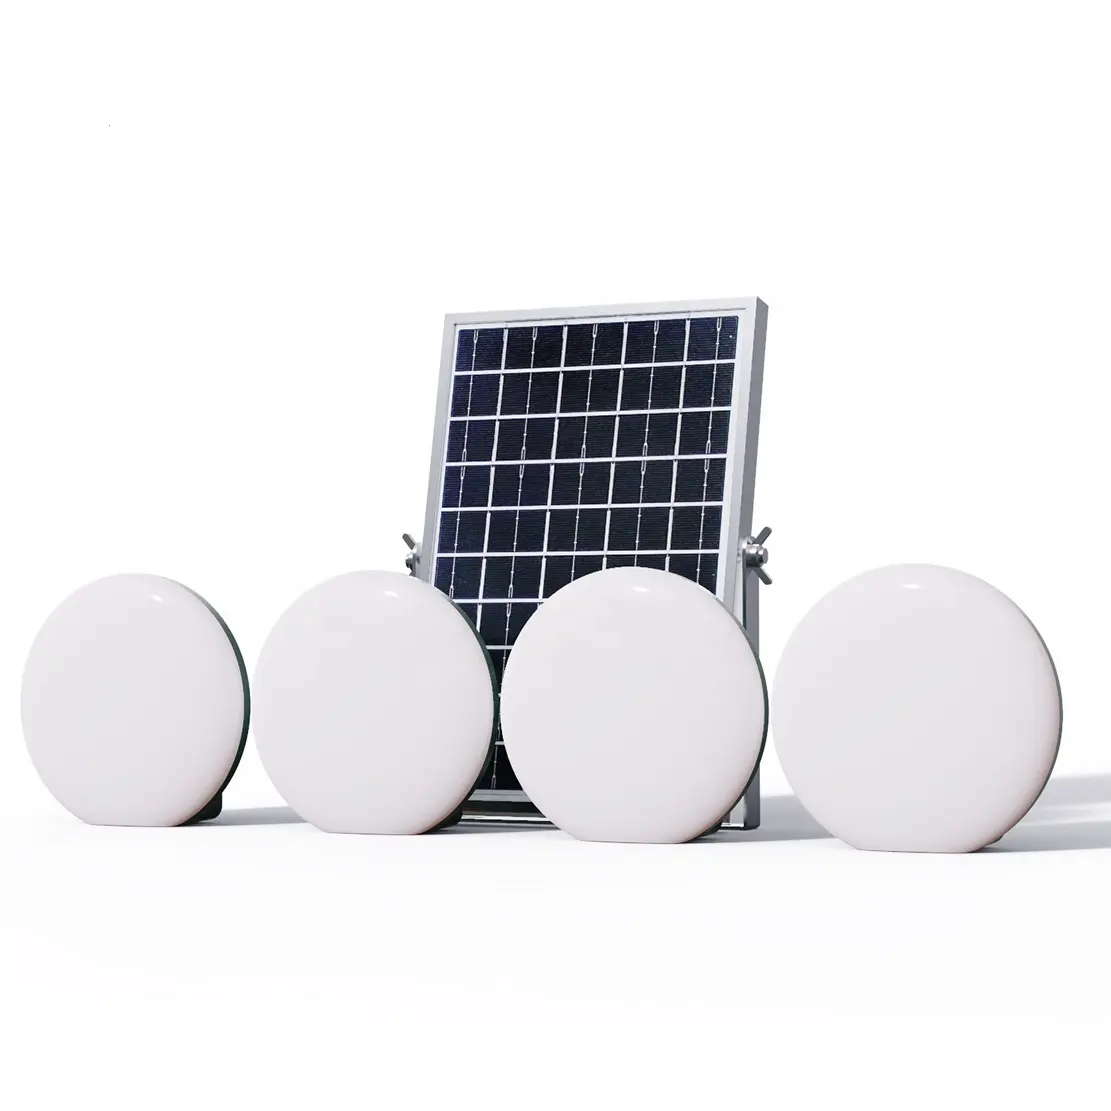 Lanterna led portátil solar de acampamento, 4 unidades, recarregável/banco de energia 2 em 1 design luz solar